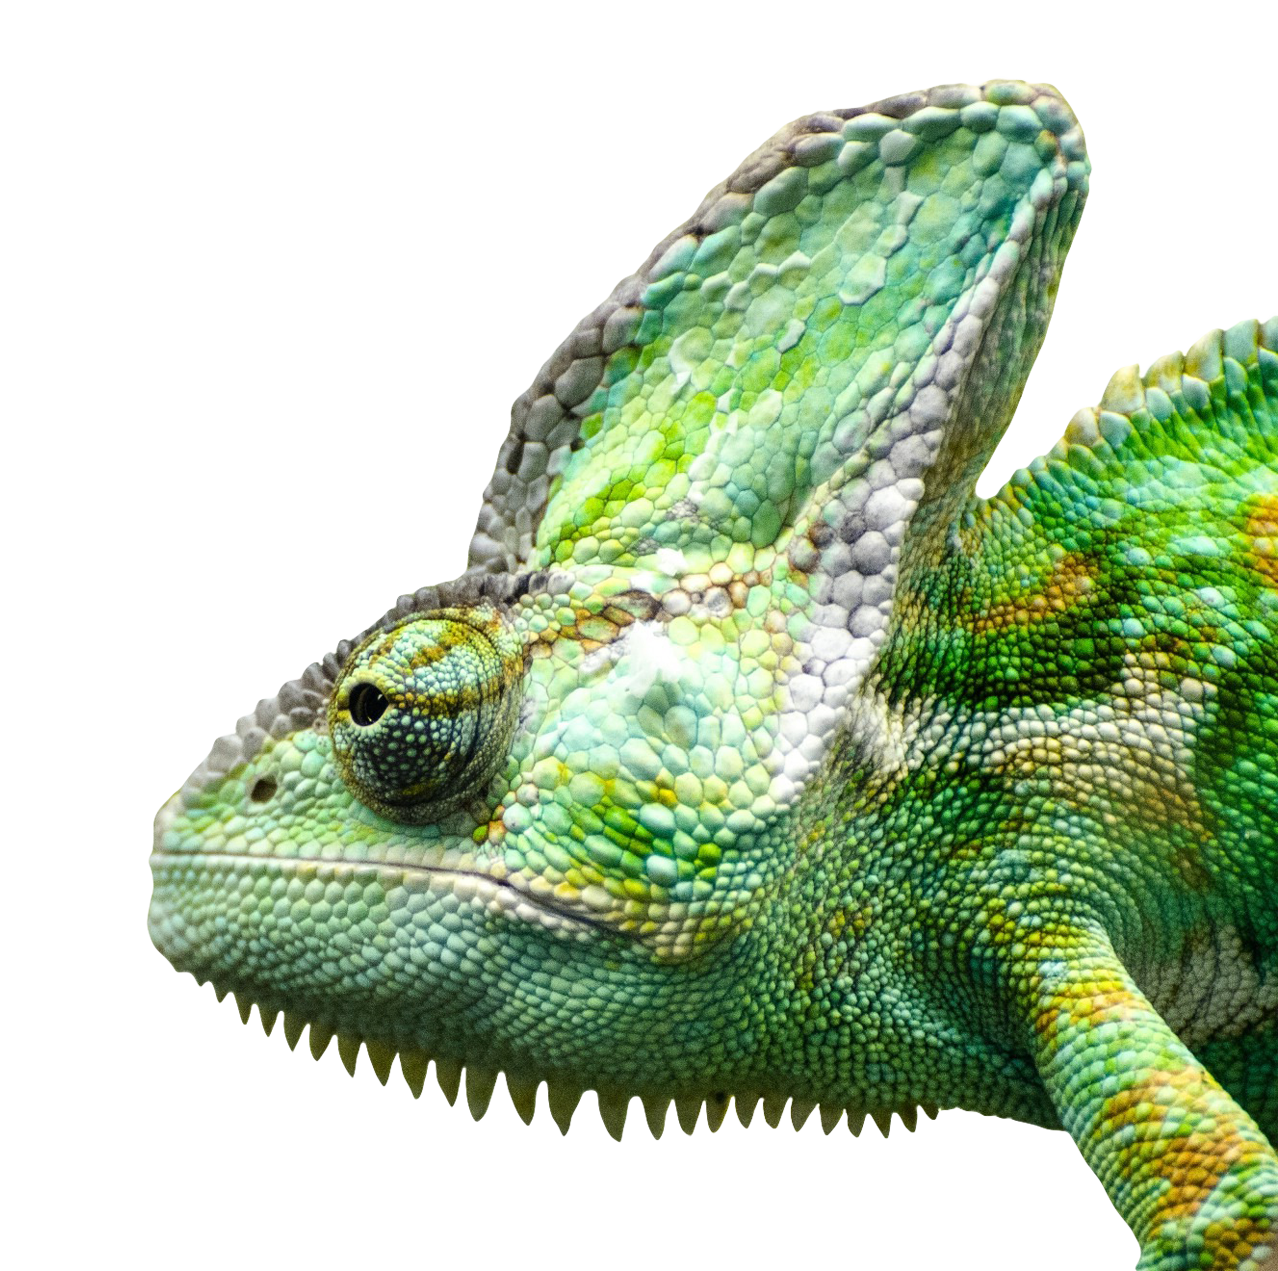 Iguana Free Download PNG Image